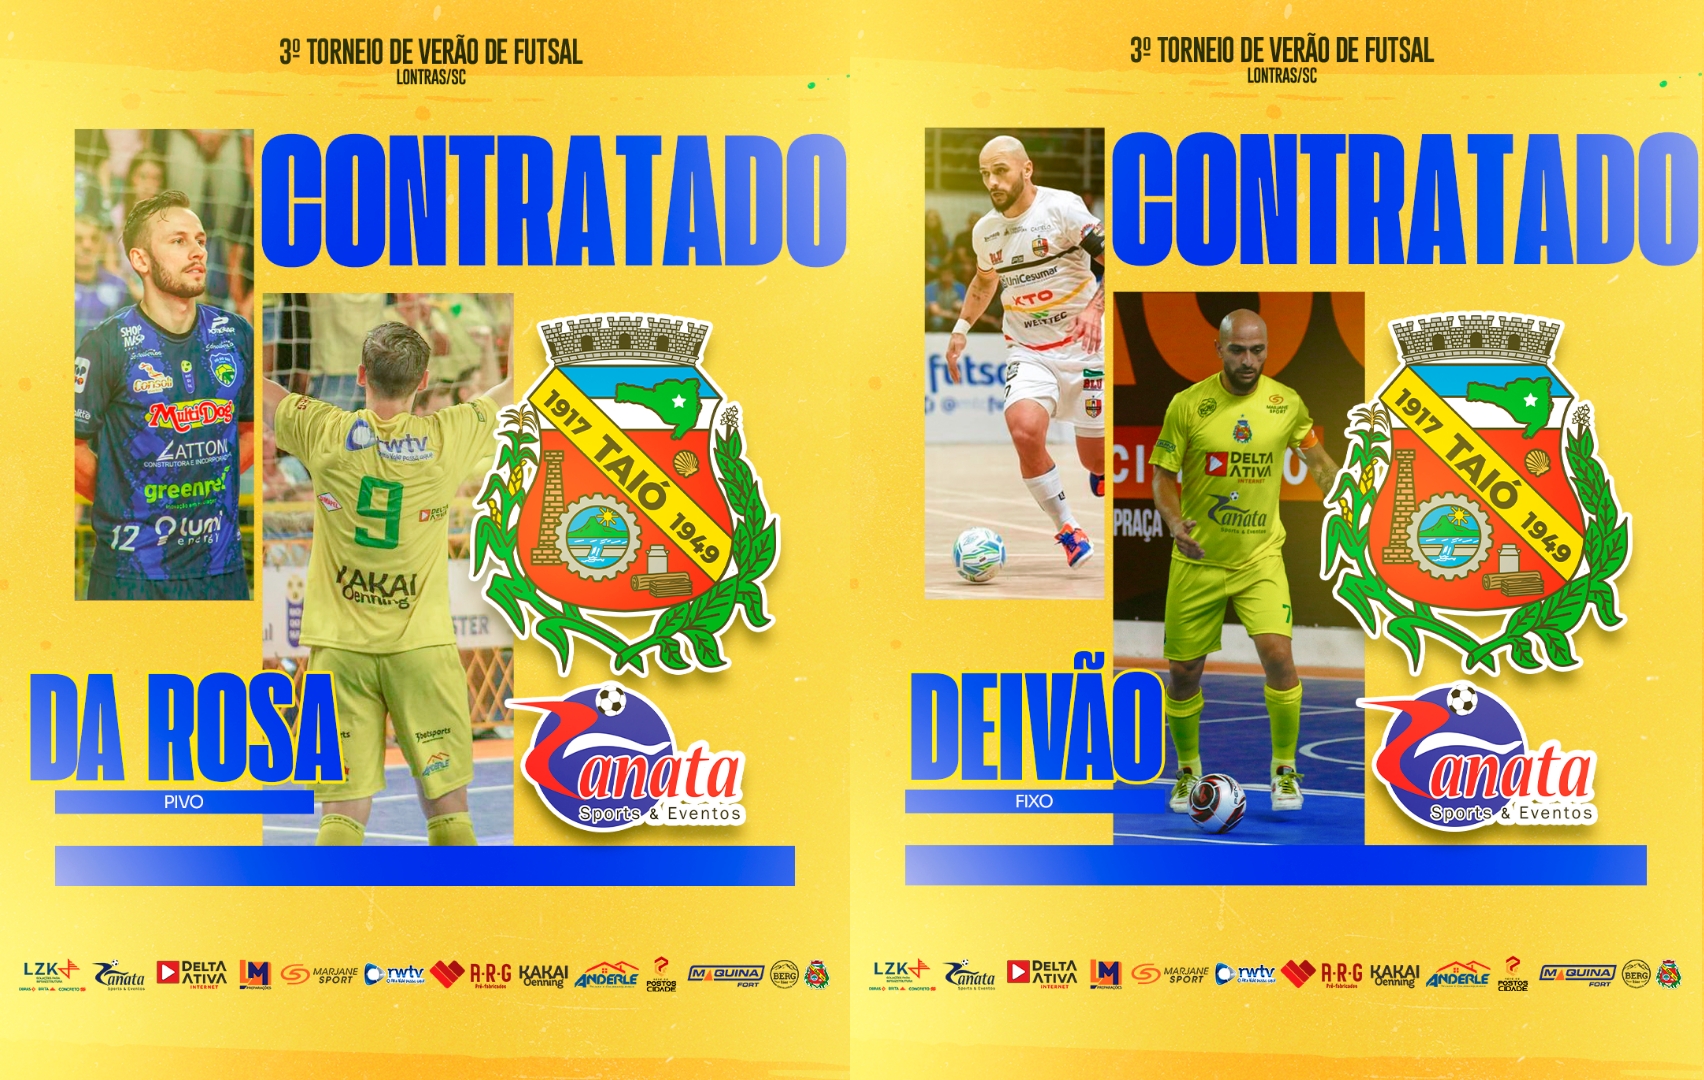 Taió Futsal/Zanata Sports anuncia dois campeões para a disputa do Torneio de Verão de Futsal